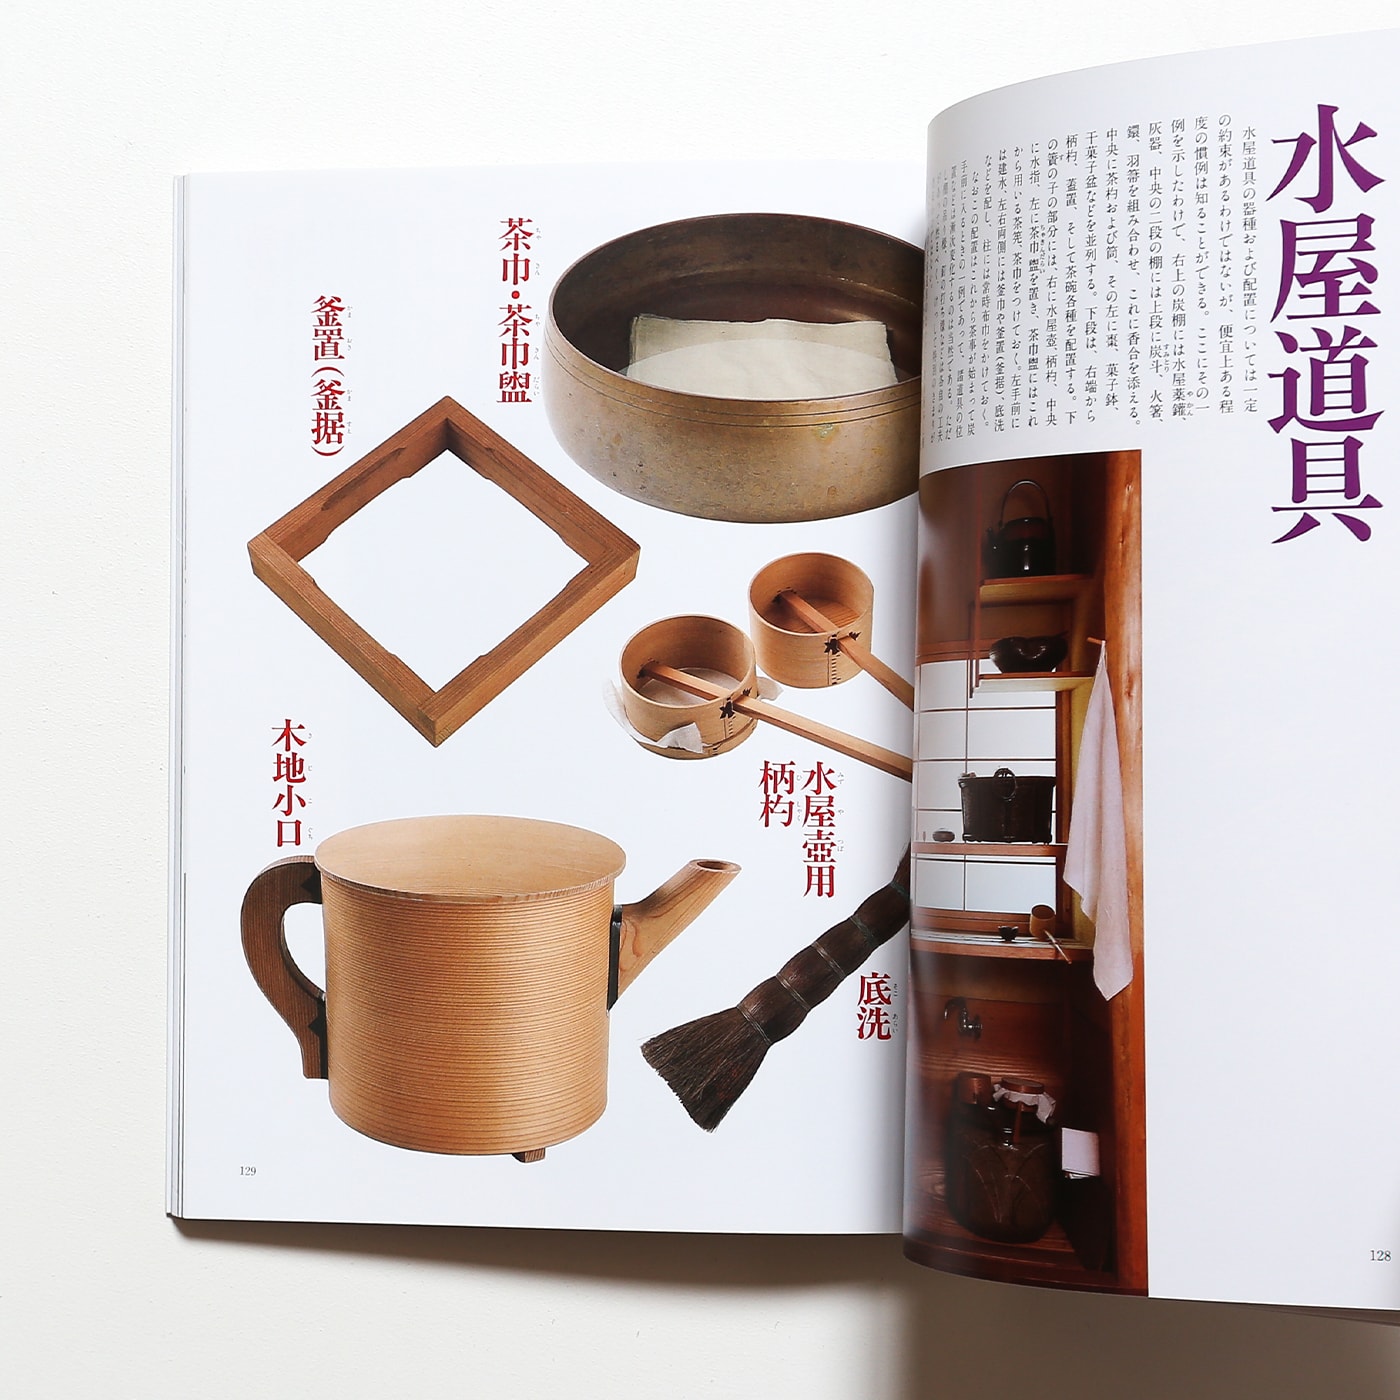 利休形 茶道具の真髄 利休のデザイン 改訂普及版